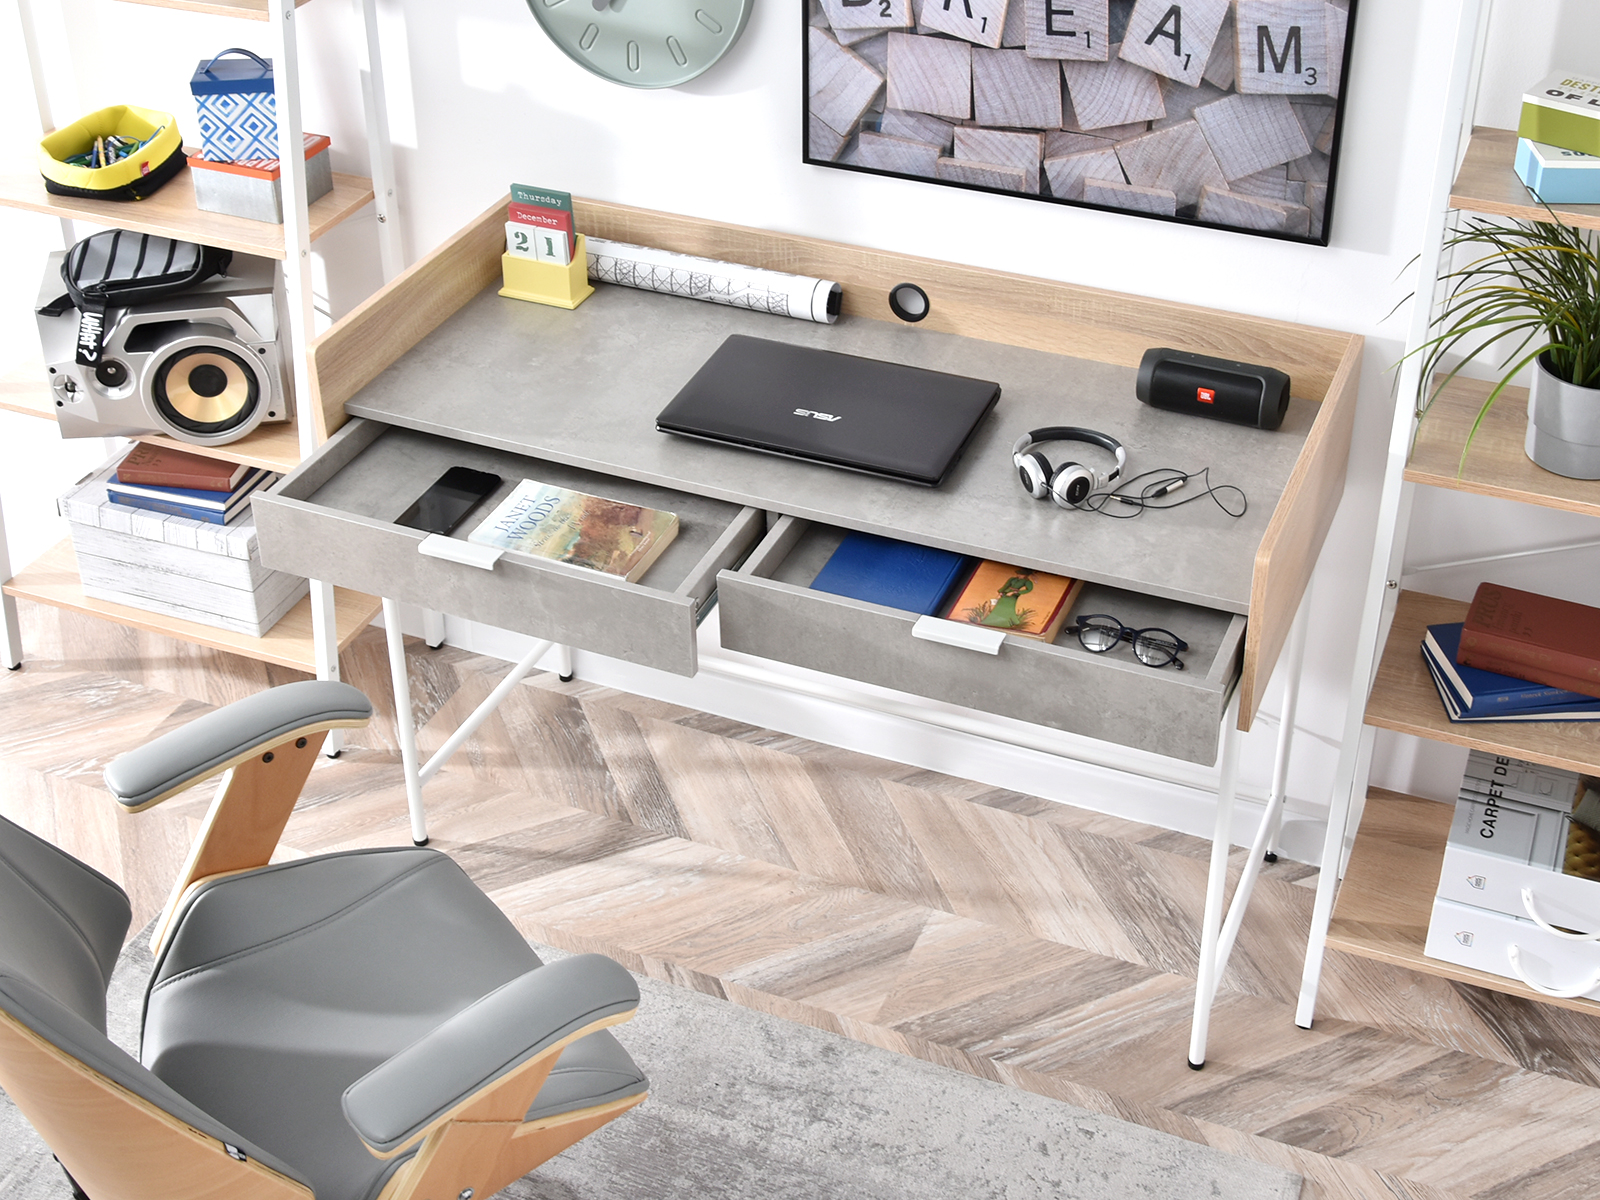 Jak urządzić mały pokój z biurkiem?